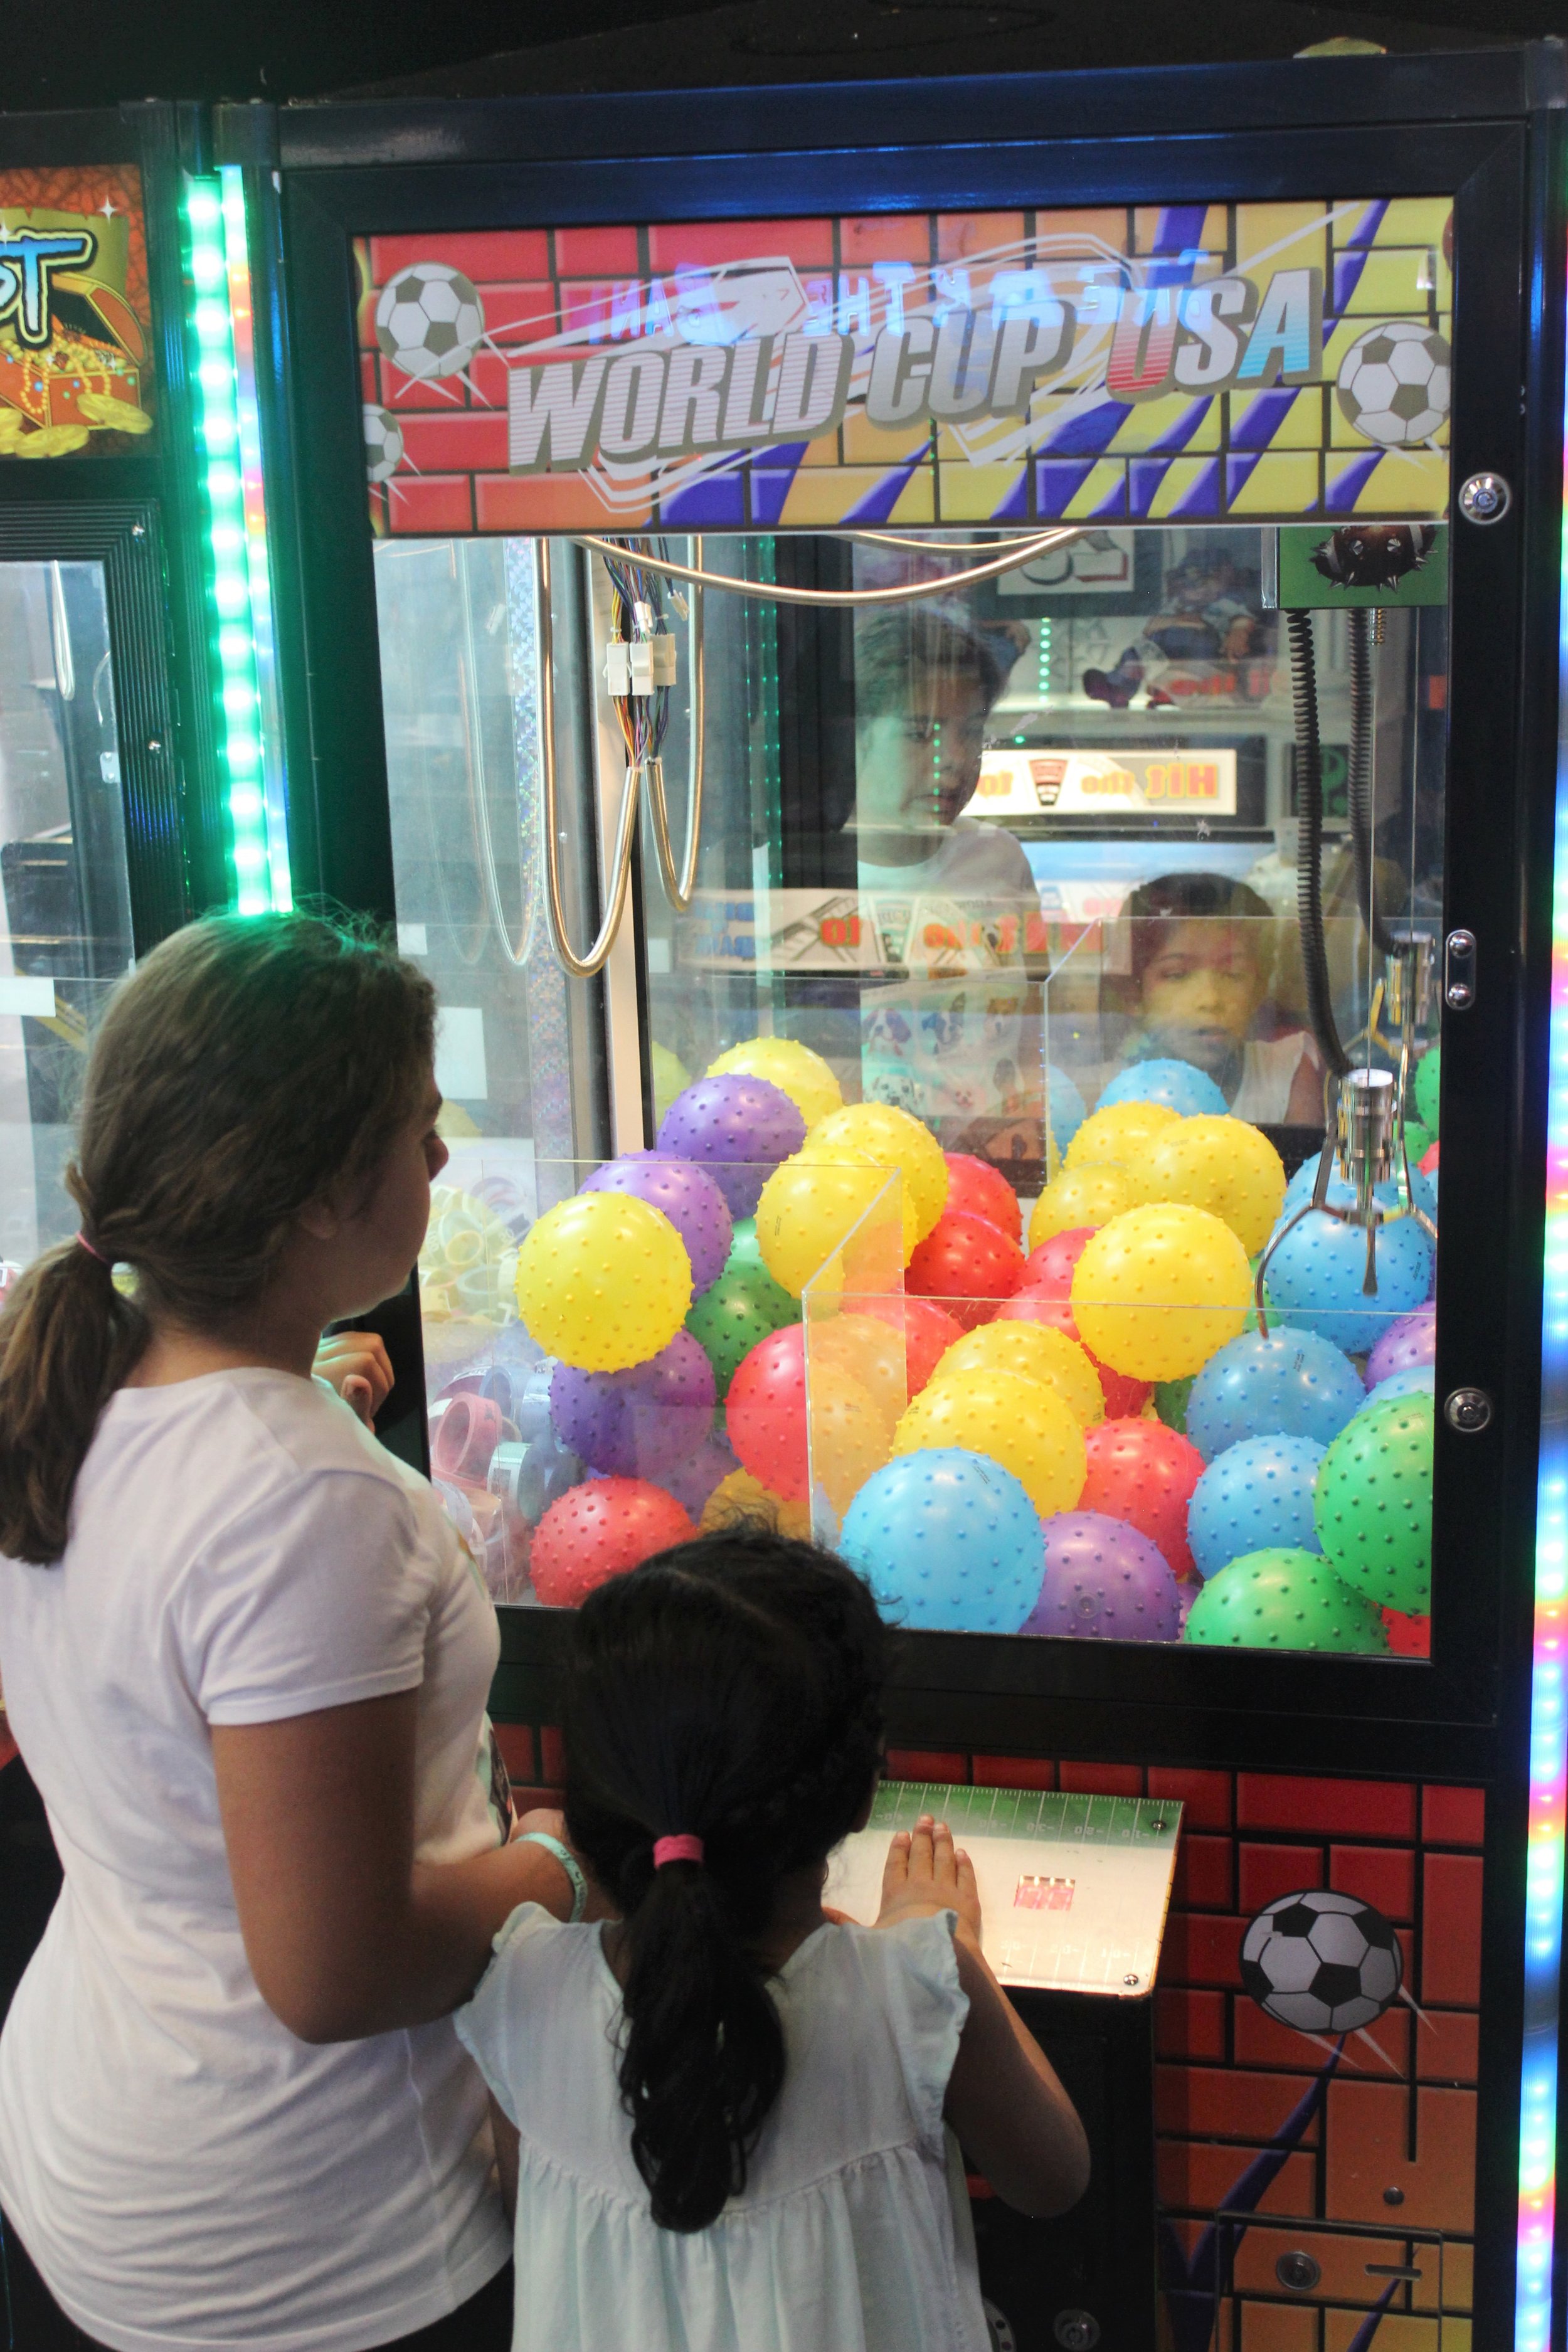  two sisters enjoying family fun in an arcade 